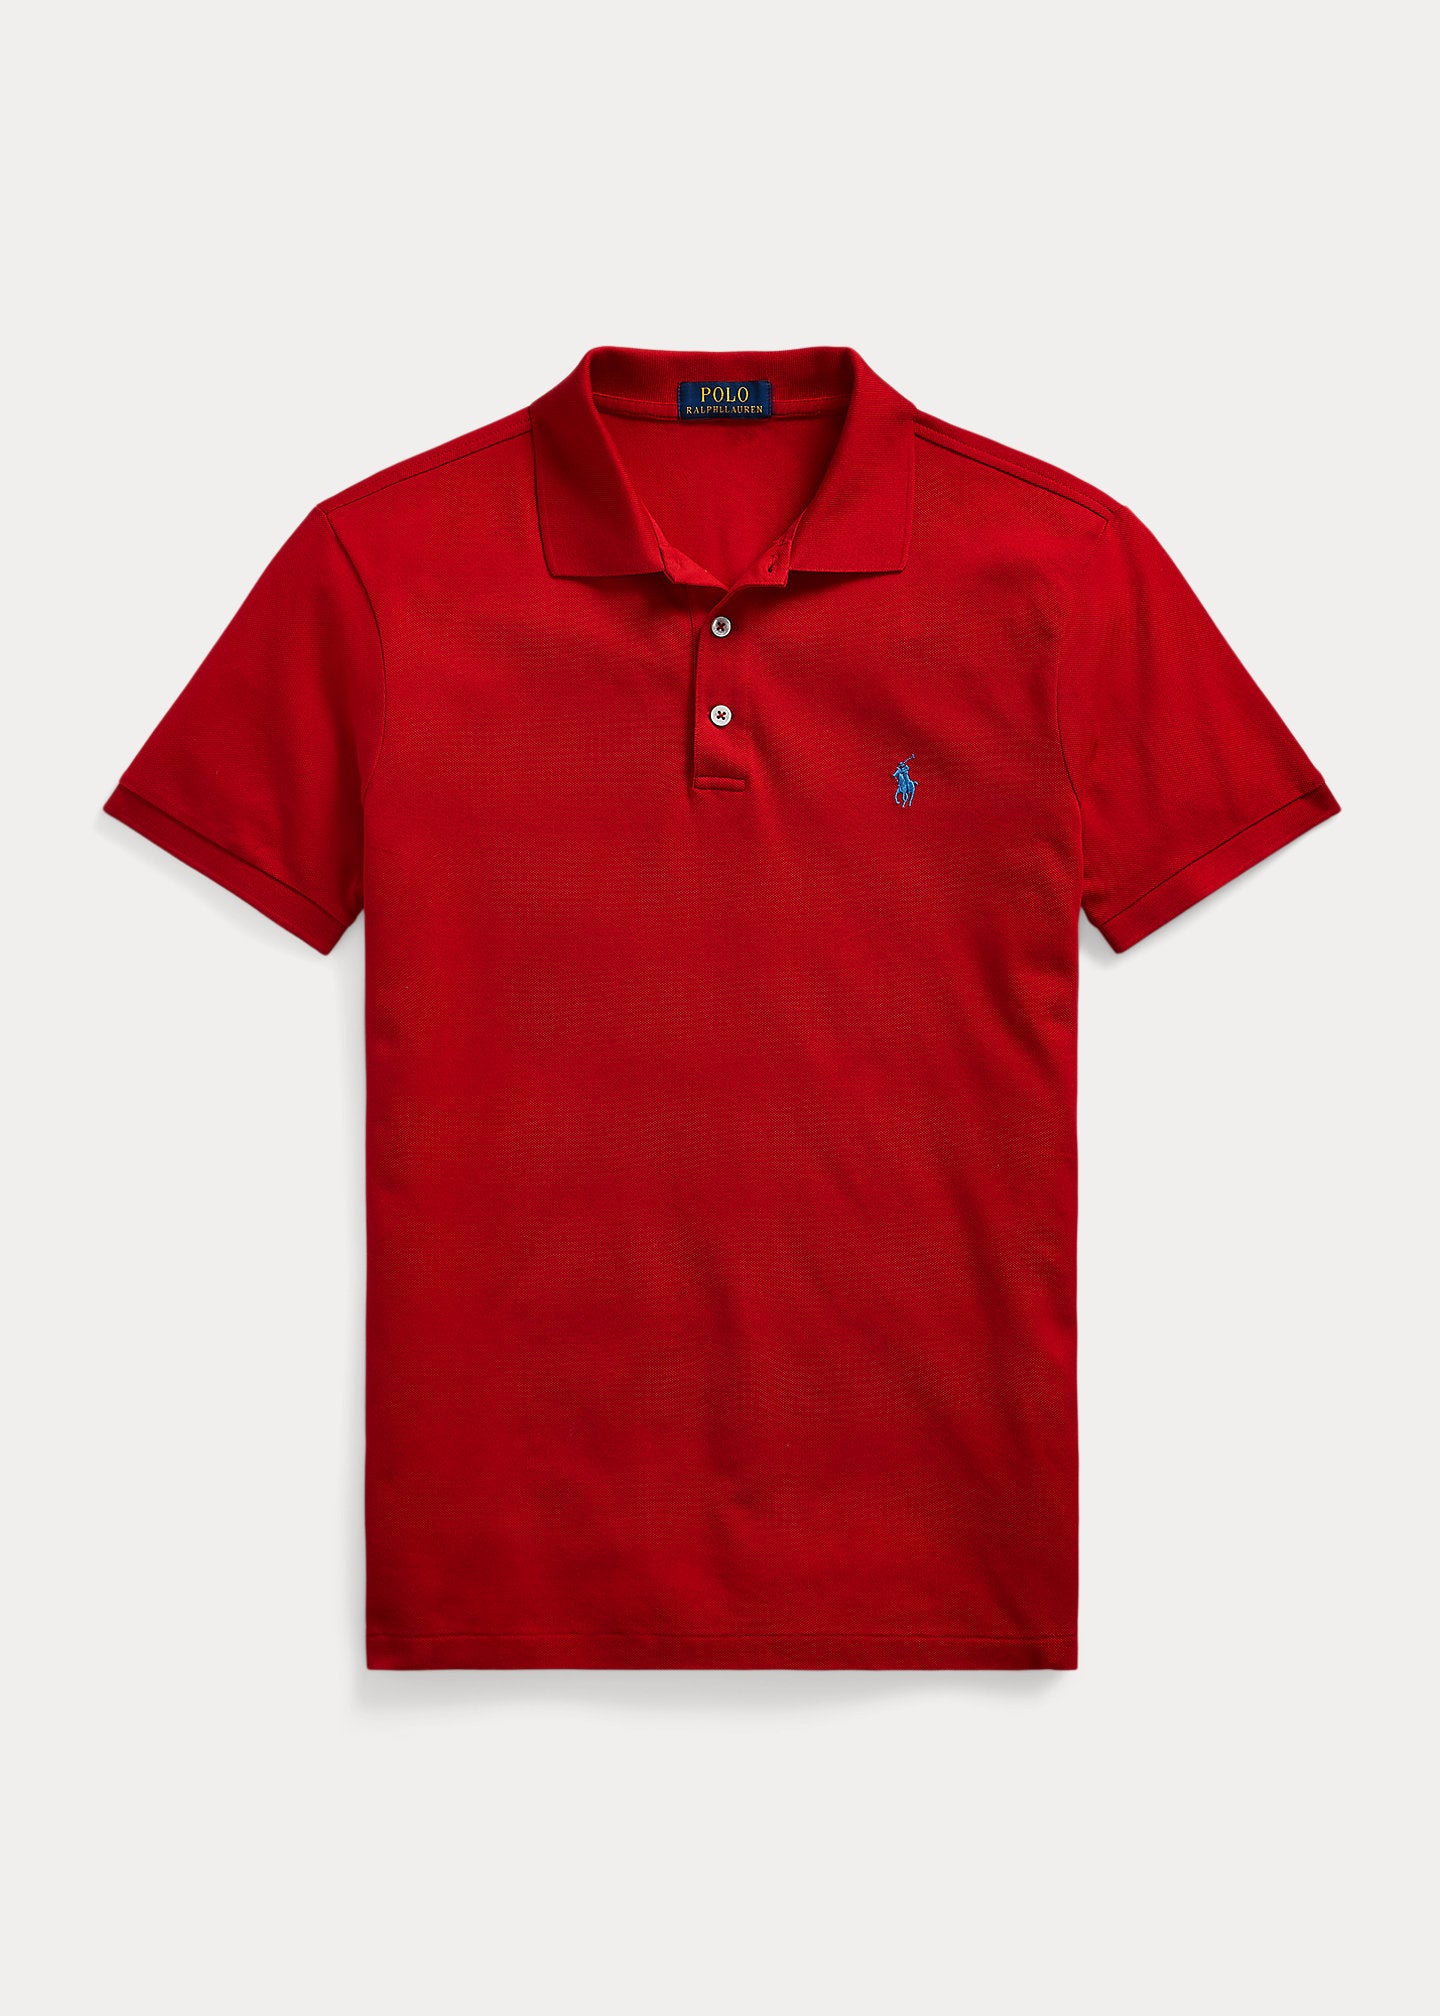 Polo homme Ralph Lauren cintré rouge en coton piqué | Georgespaul